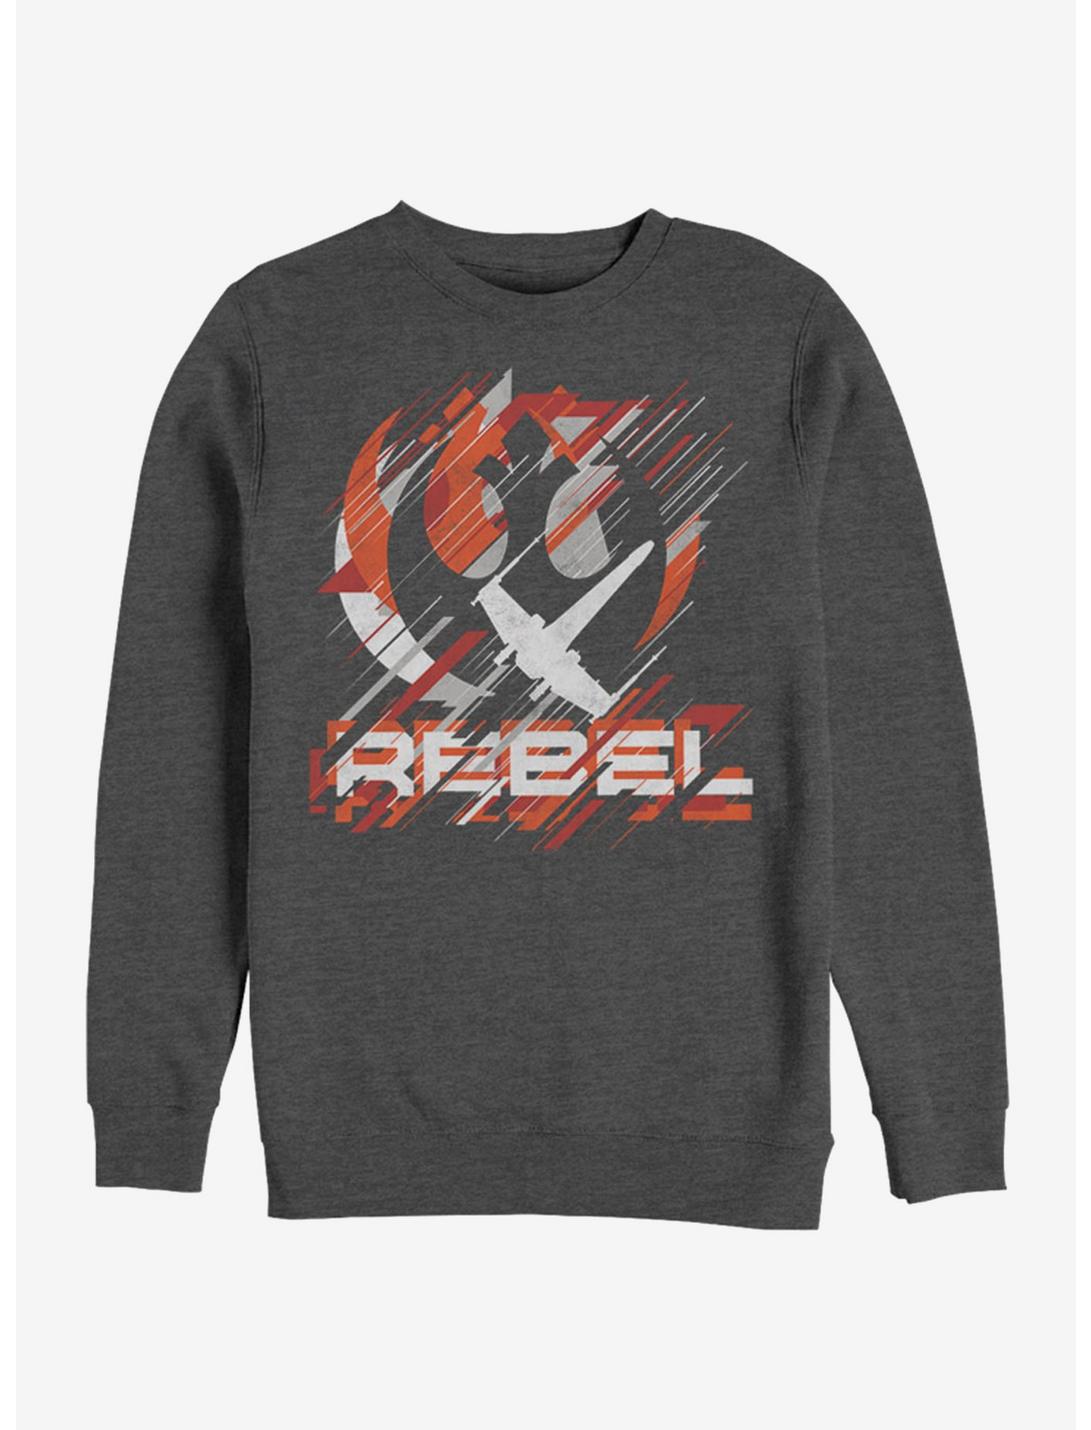 Star Wars Rebel Streaks Sweatshirt, CHAR HTR, hi-res